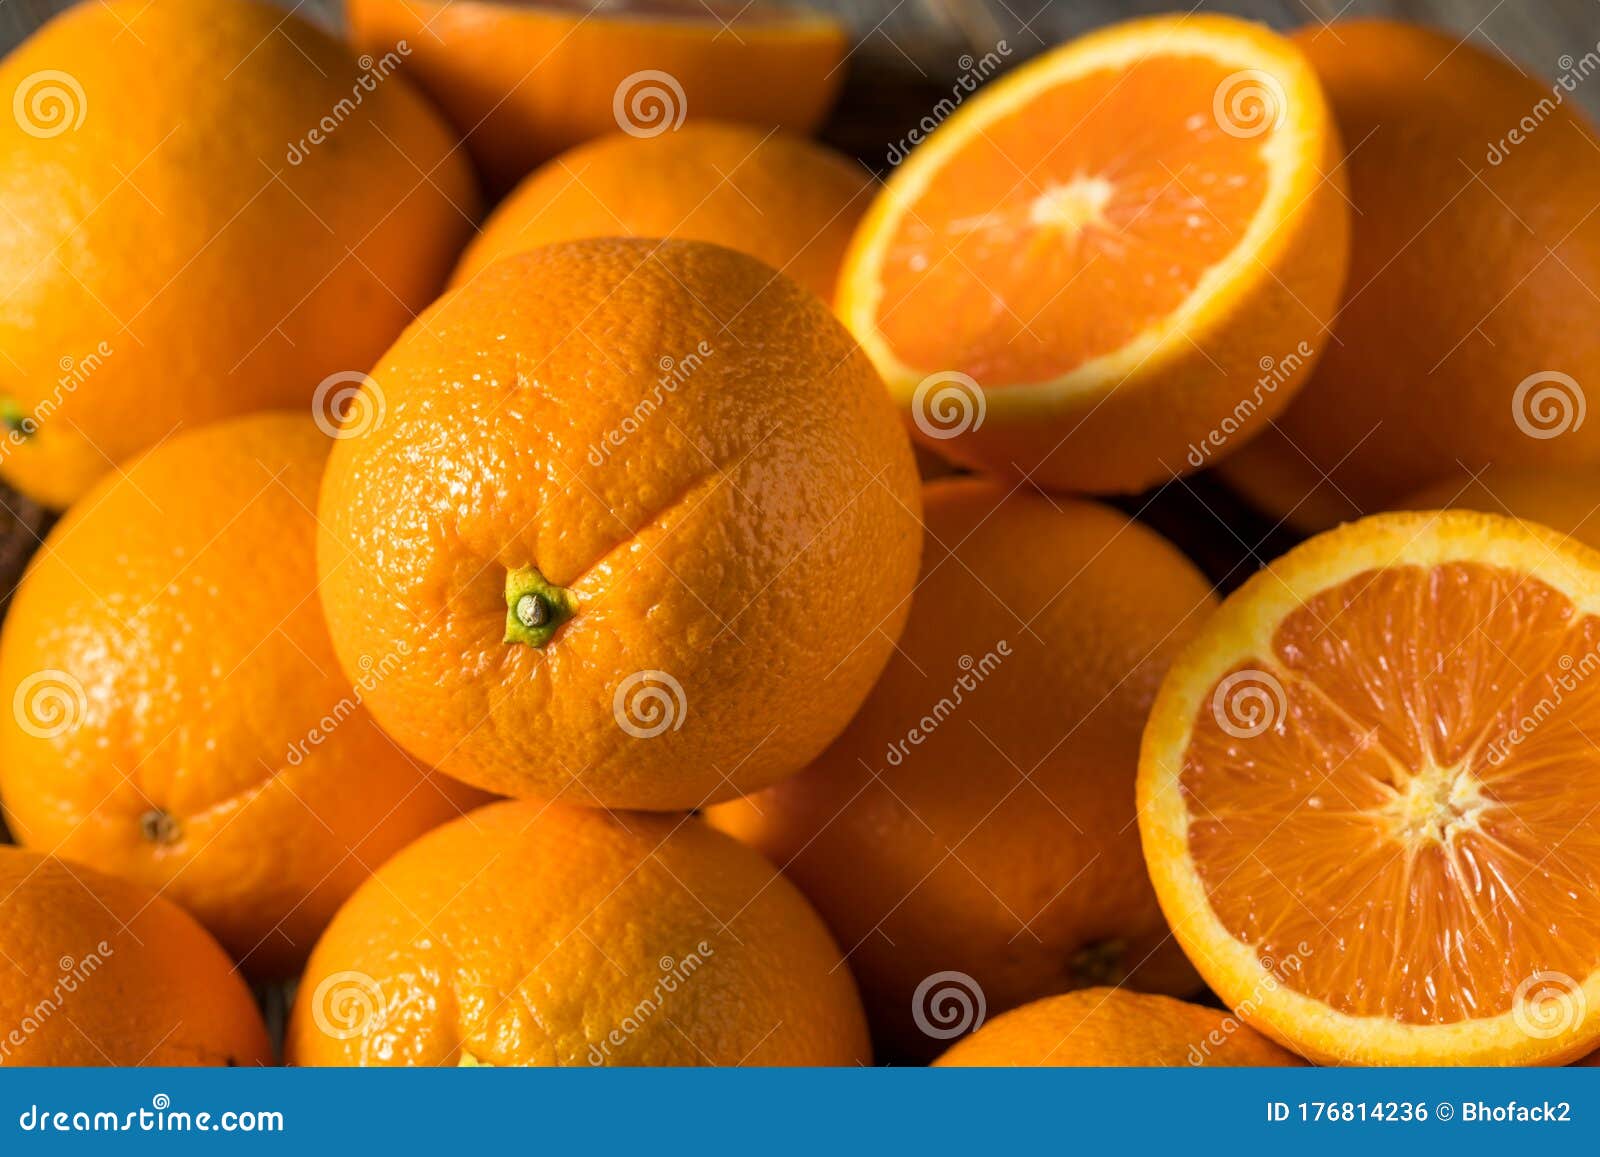 raw organic cara navel oranges